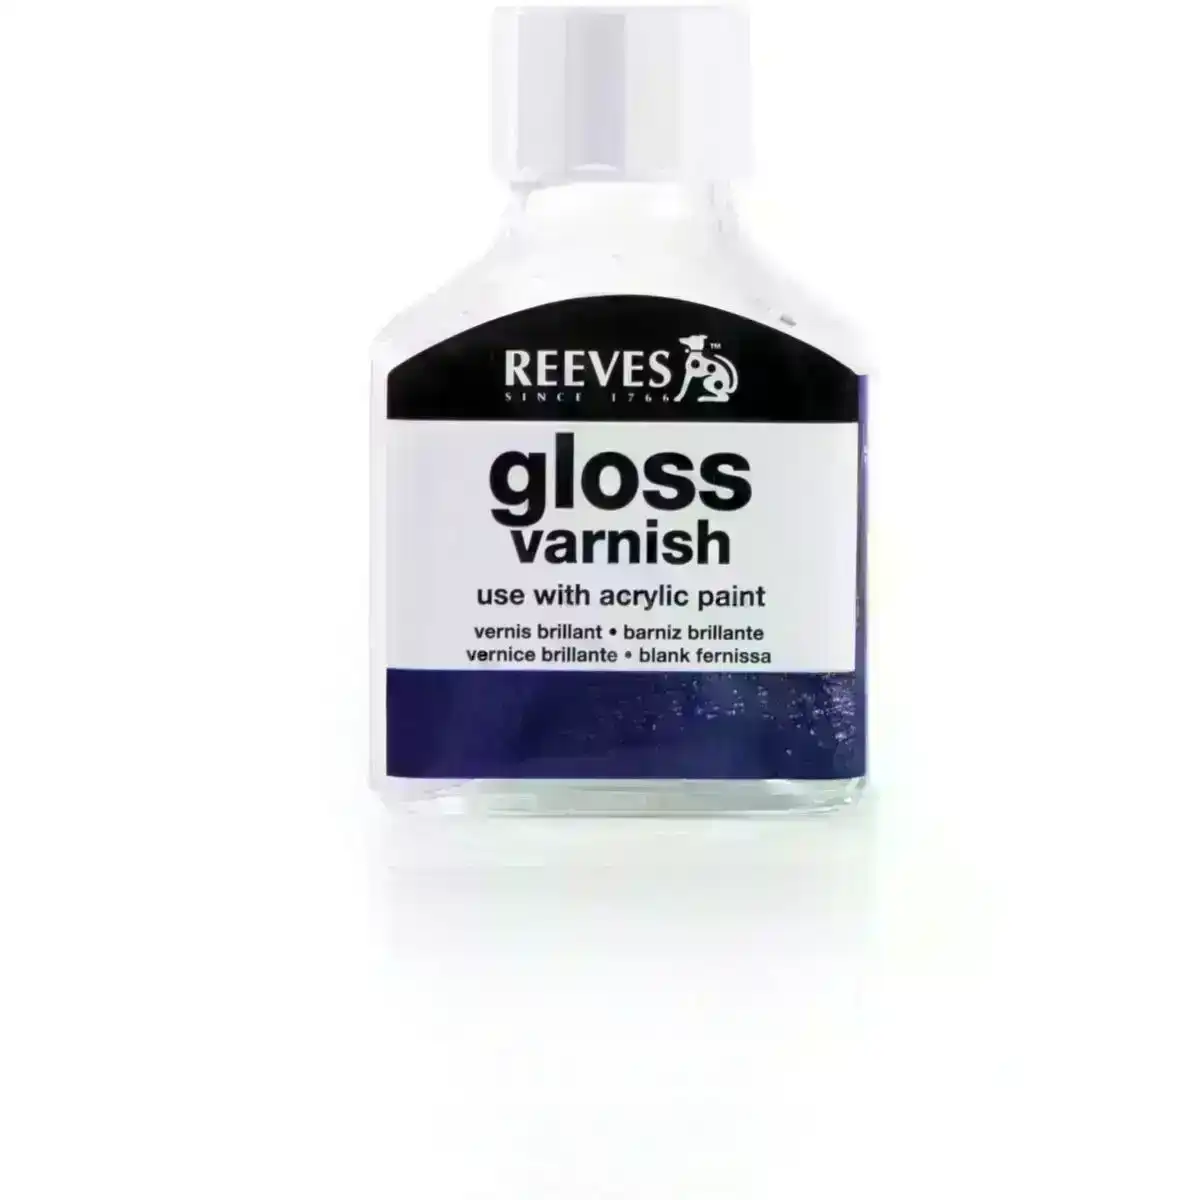 Reeves Gloss Varnish 75ml